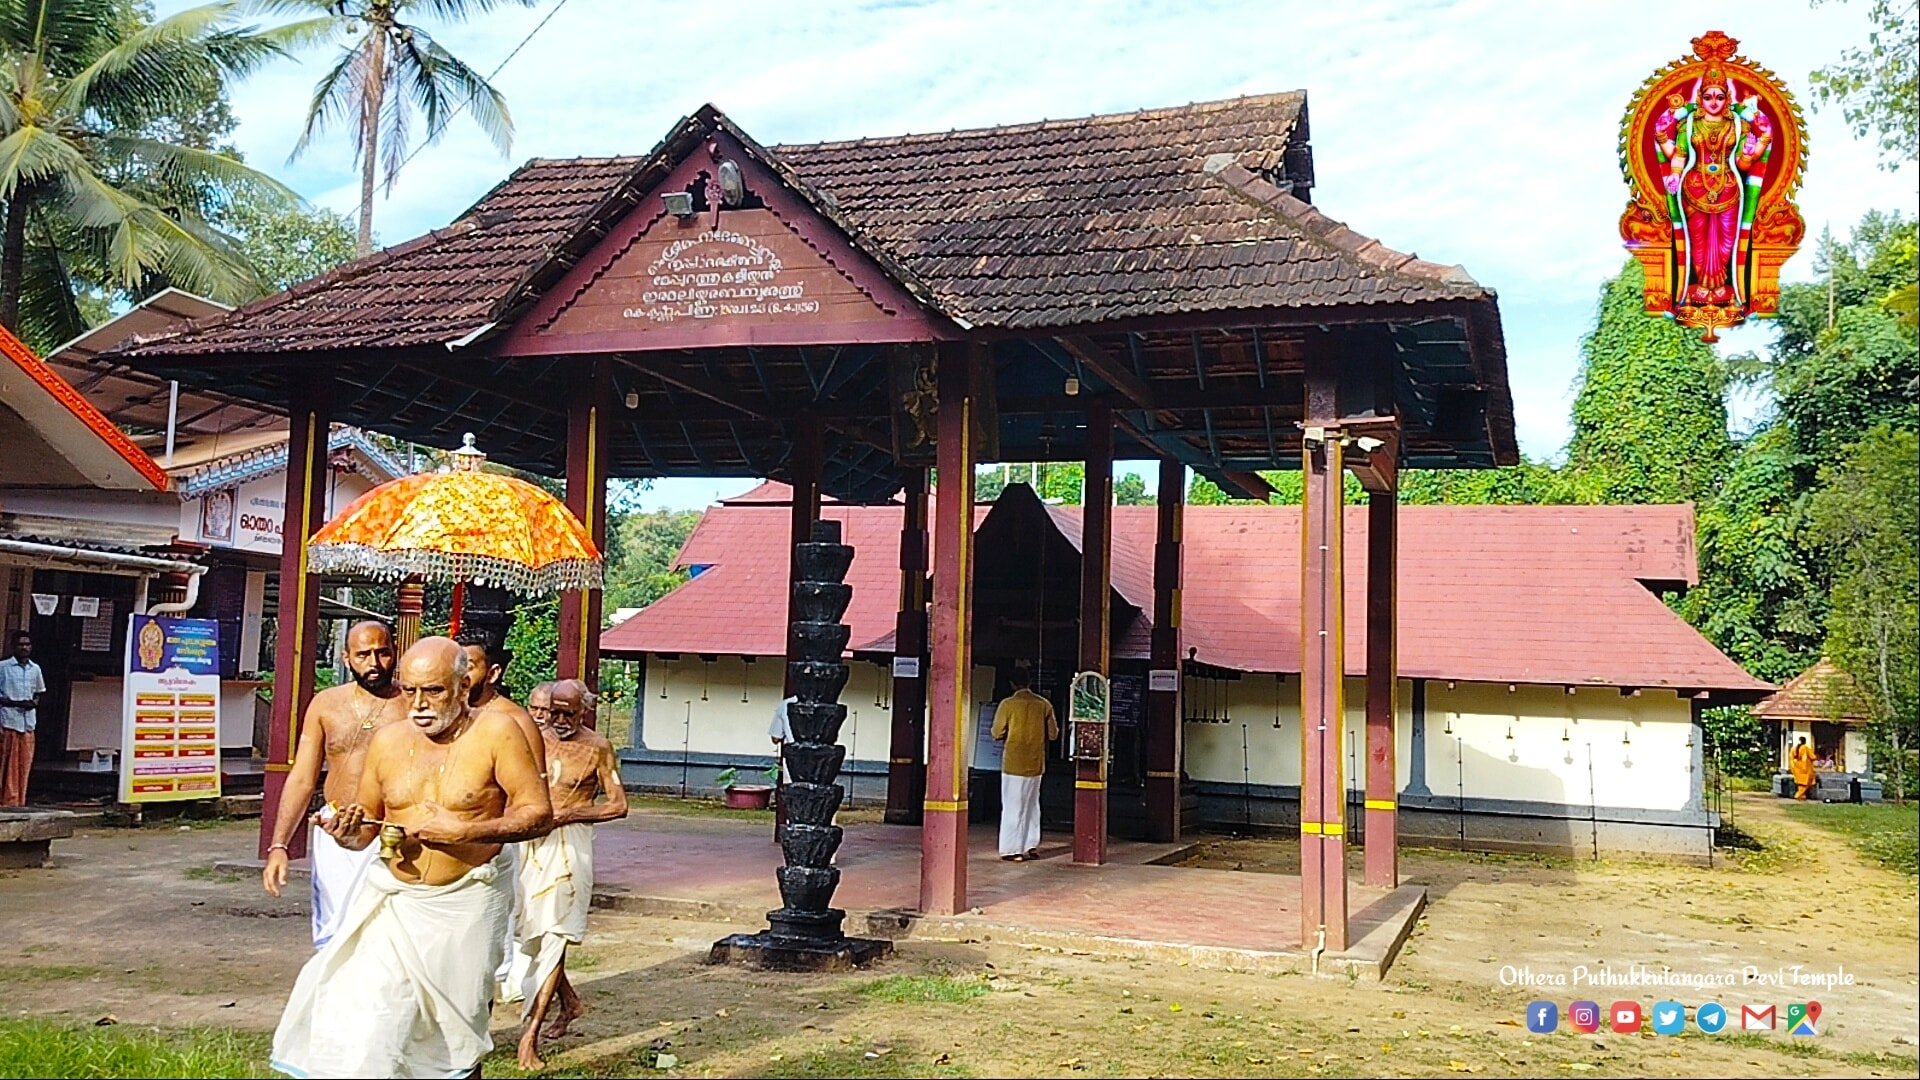 Othera Puthukulangara Devi Temple